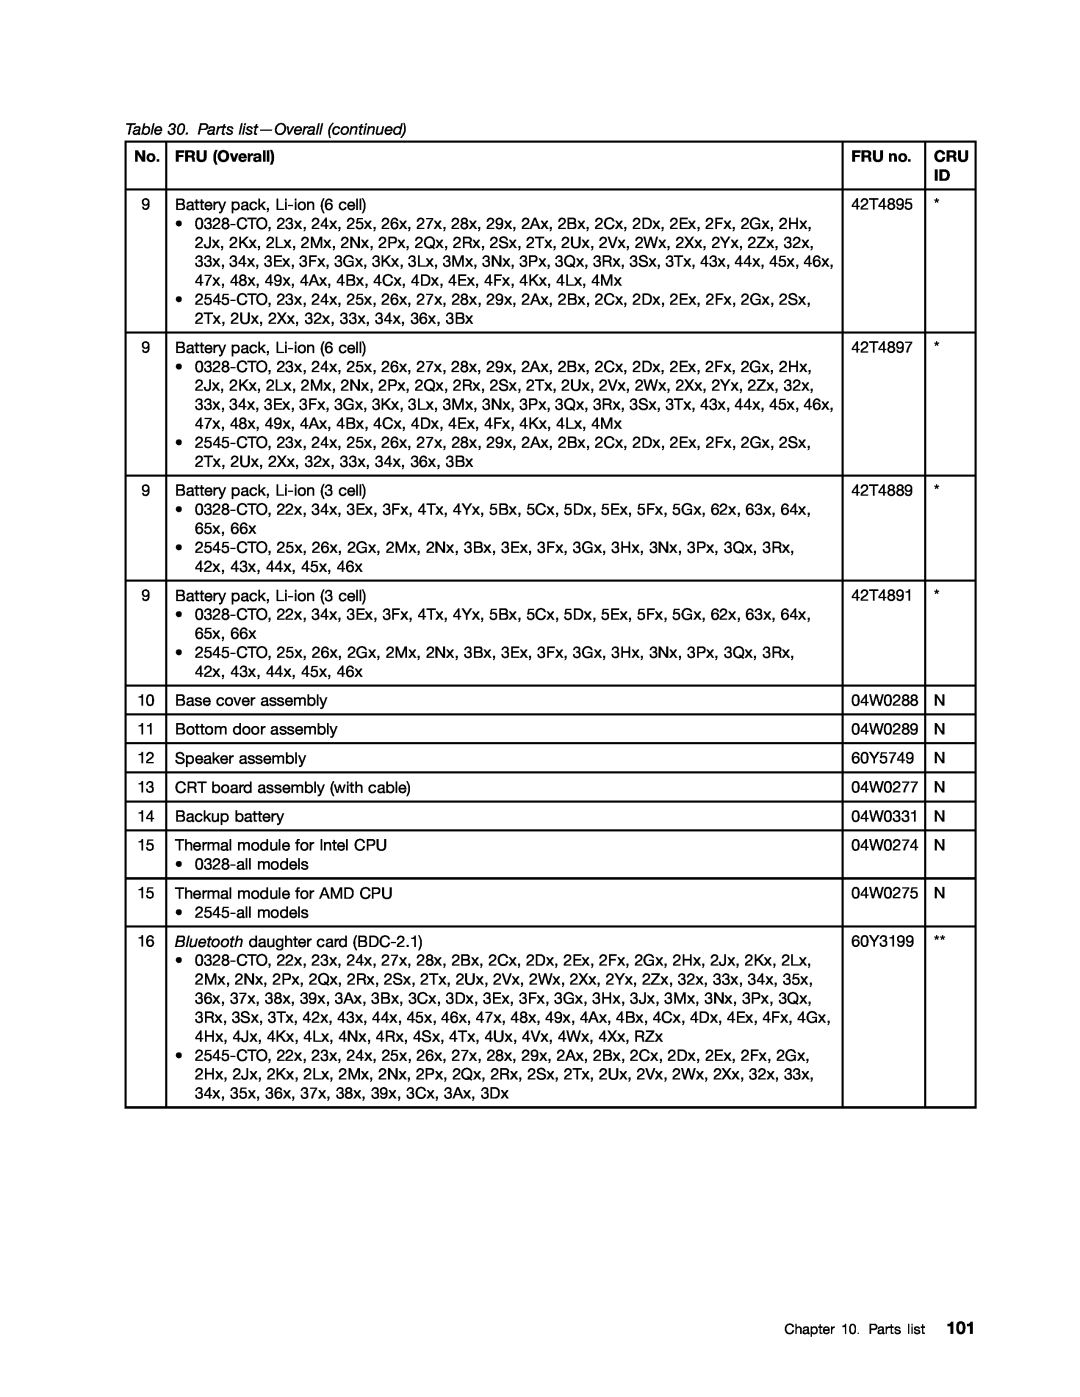 Lenovo E10 manual Parts list-Overall continued, FRU Overall, FRU no 